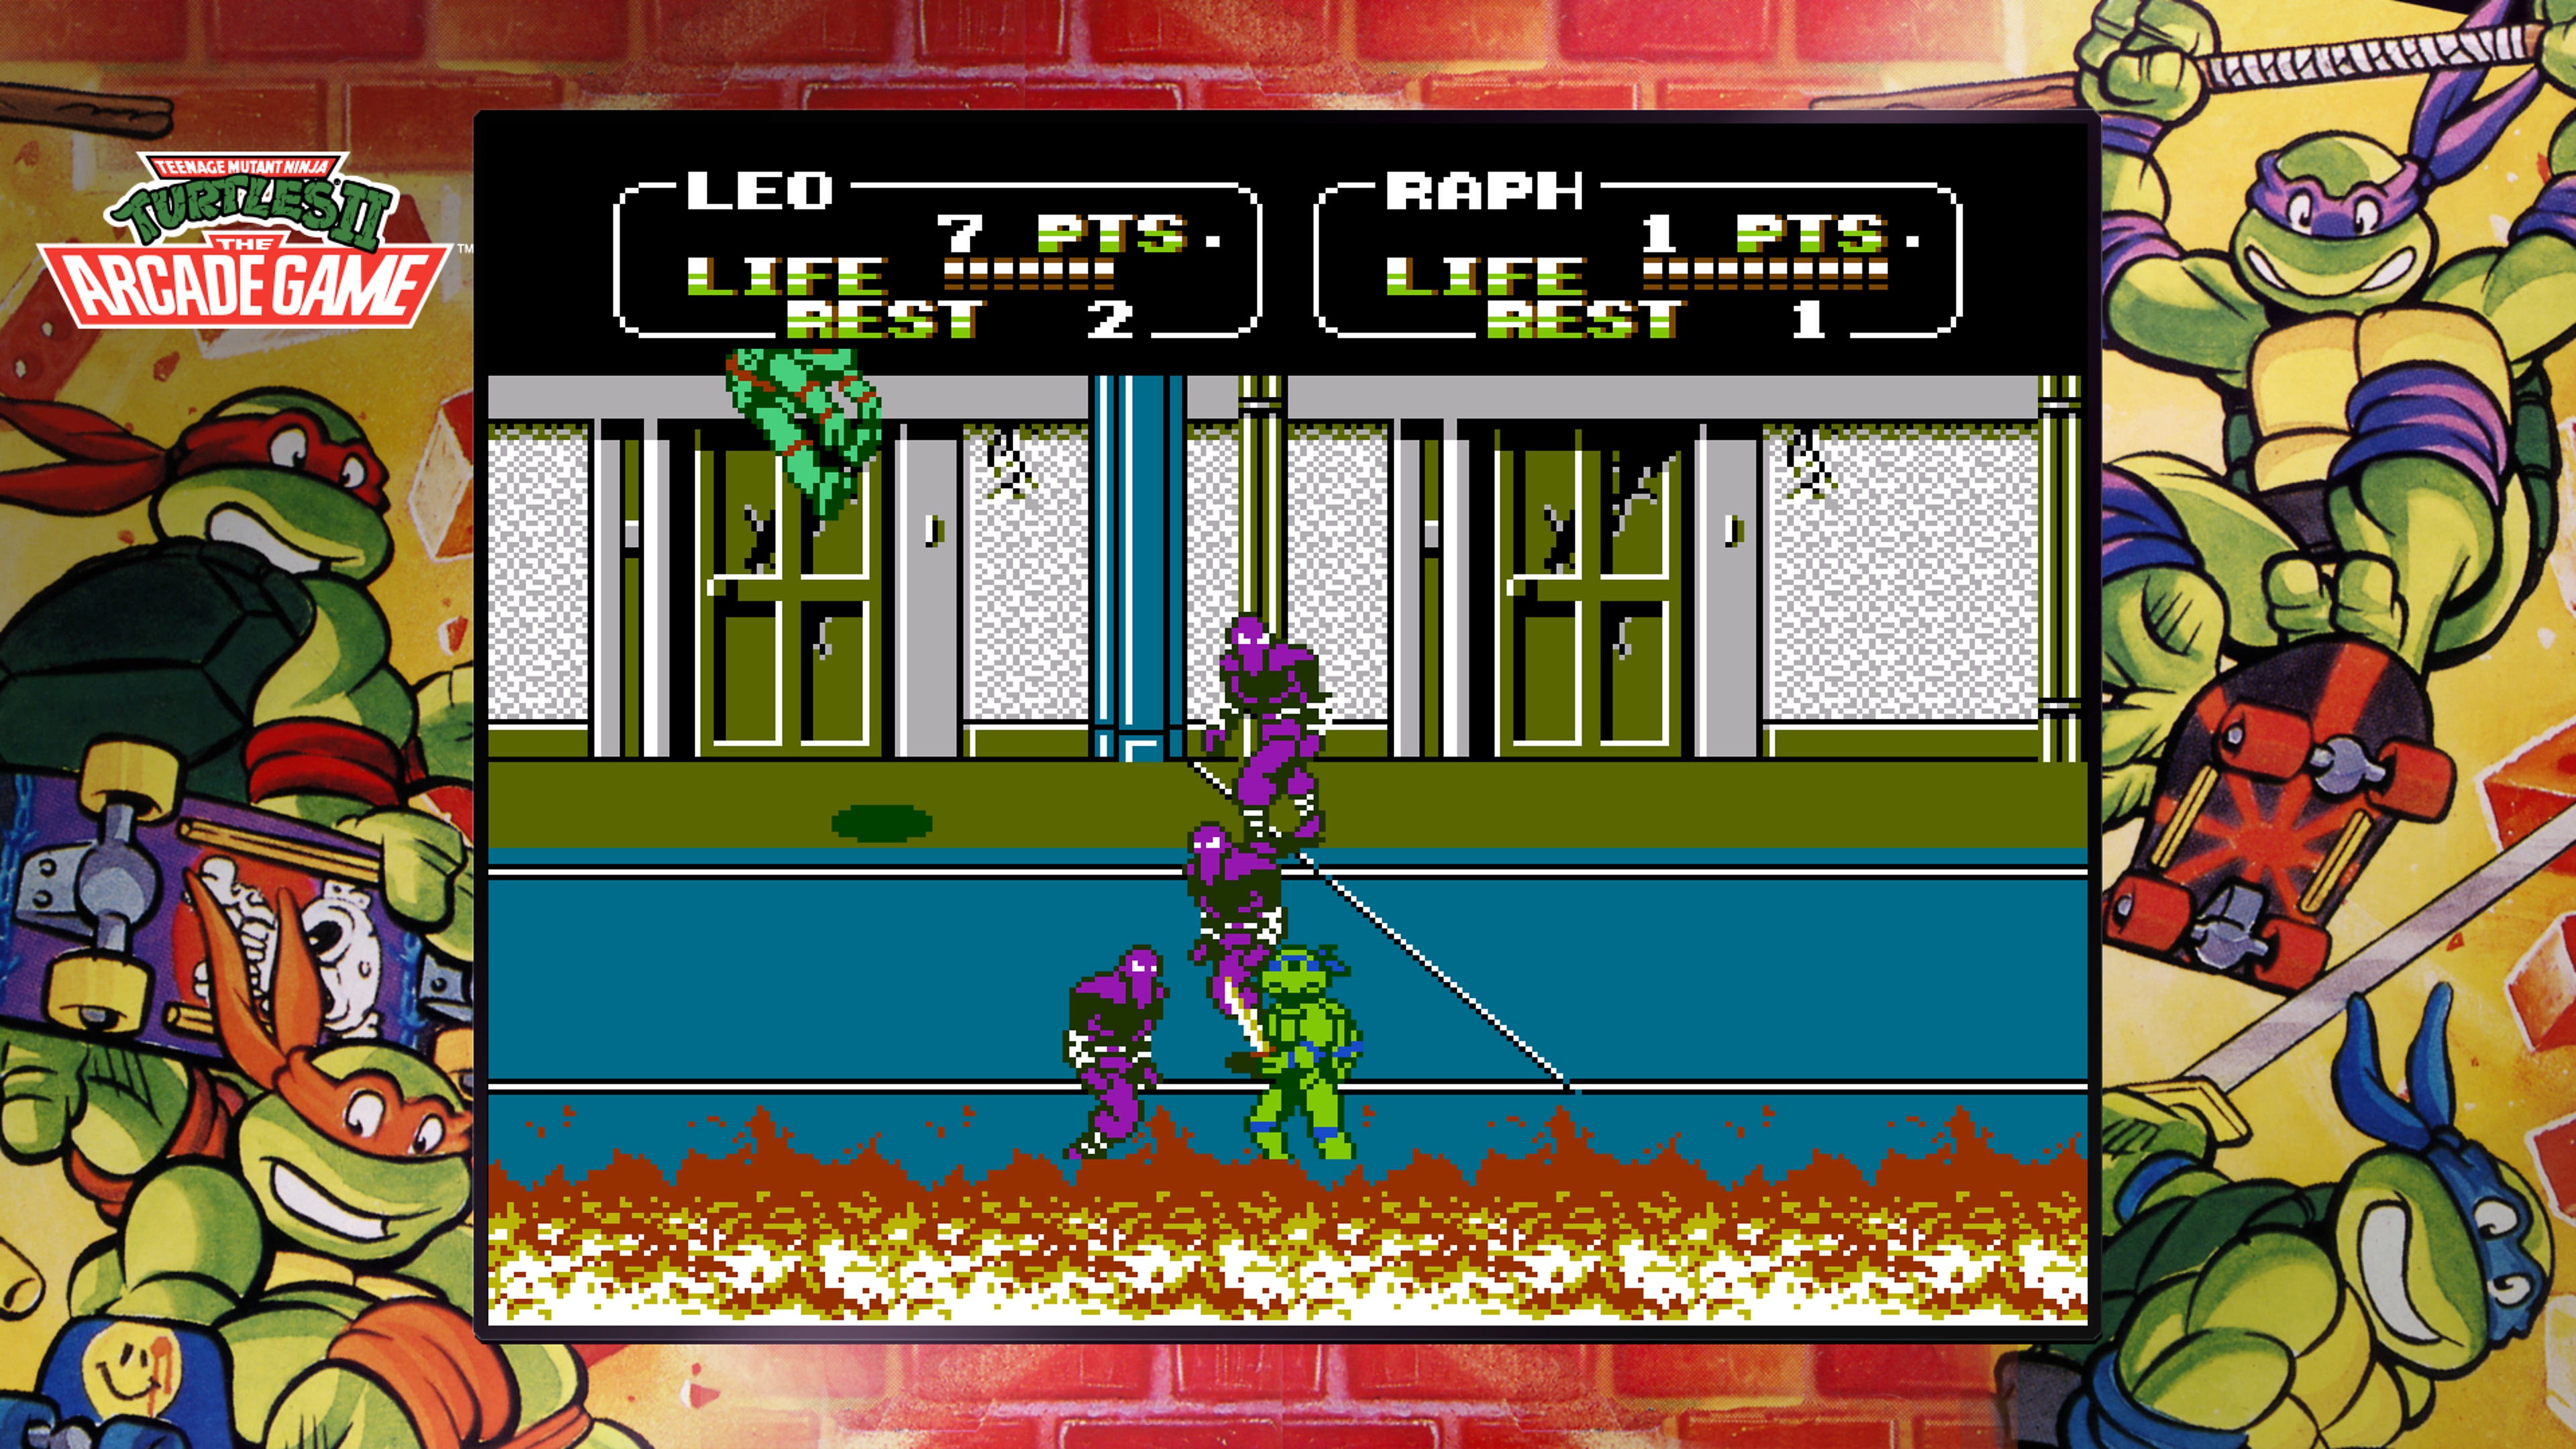 《忍者神龟合集-街机版》游戏截图展示莱昂纳多正在和大脚帮对打